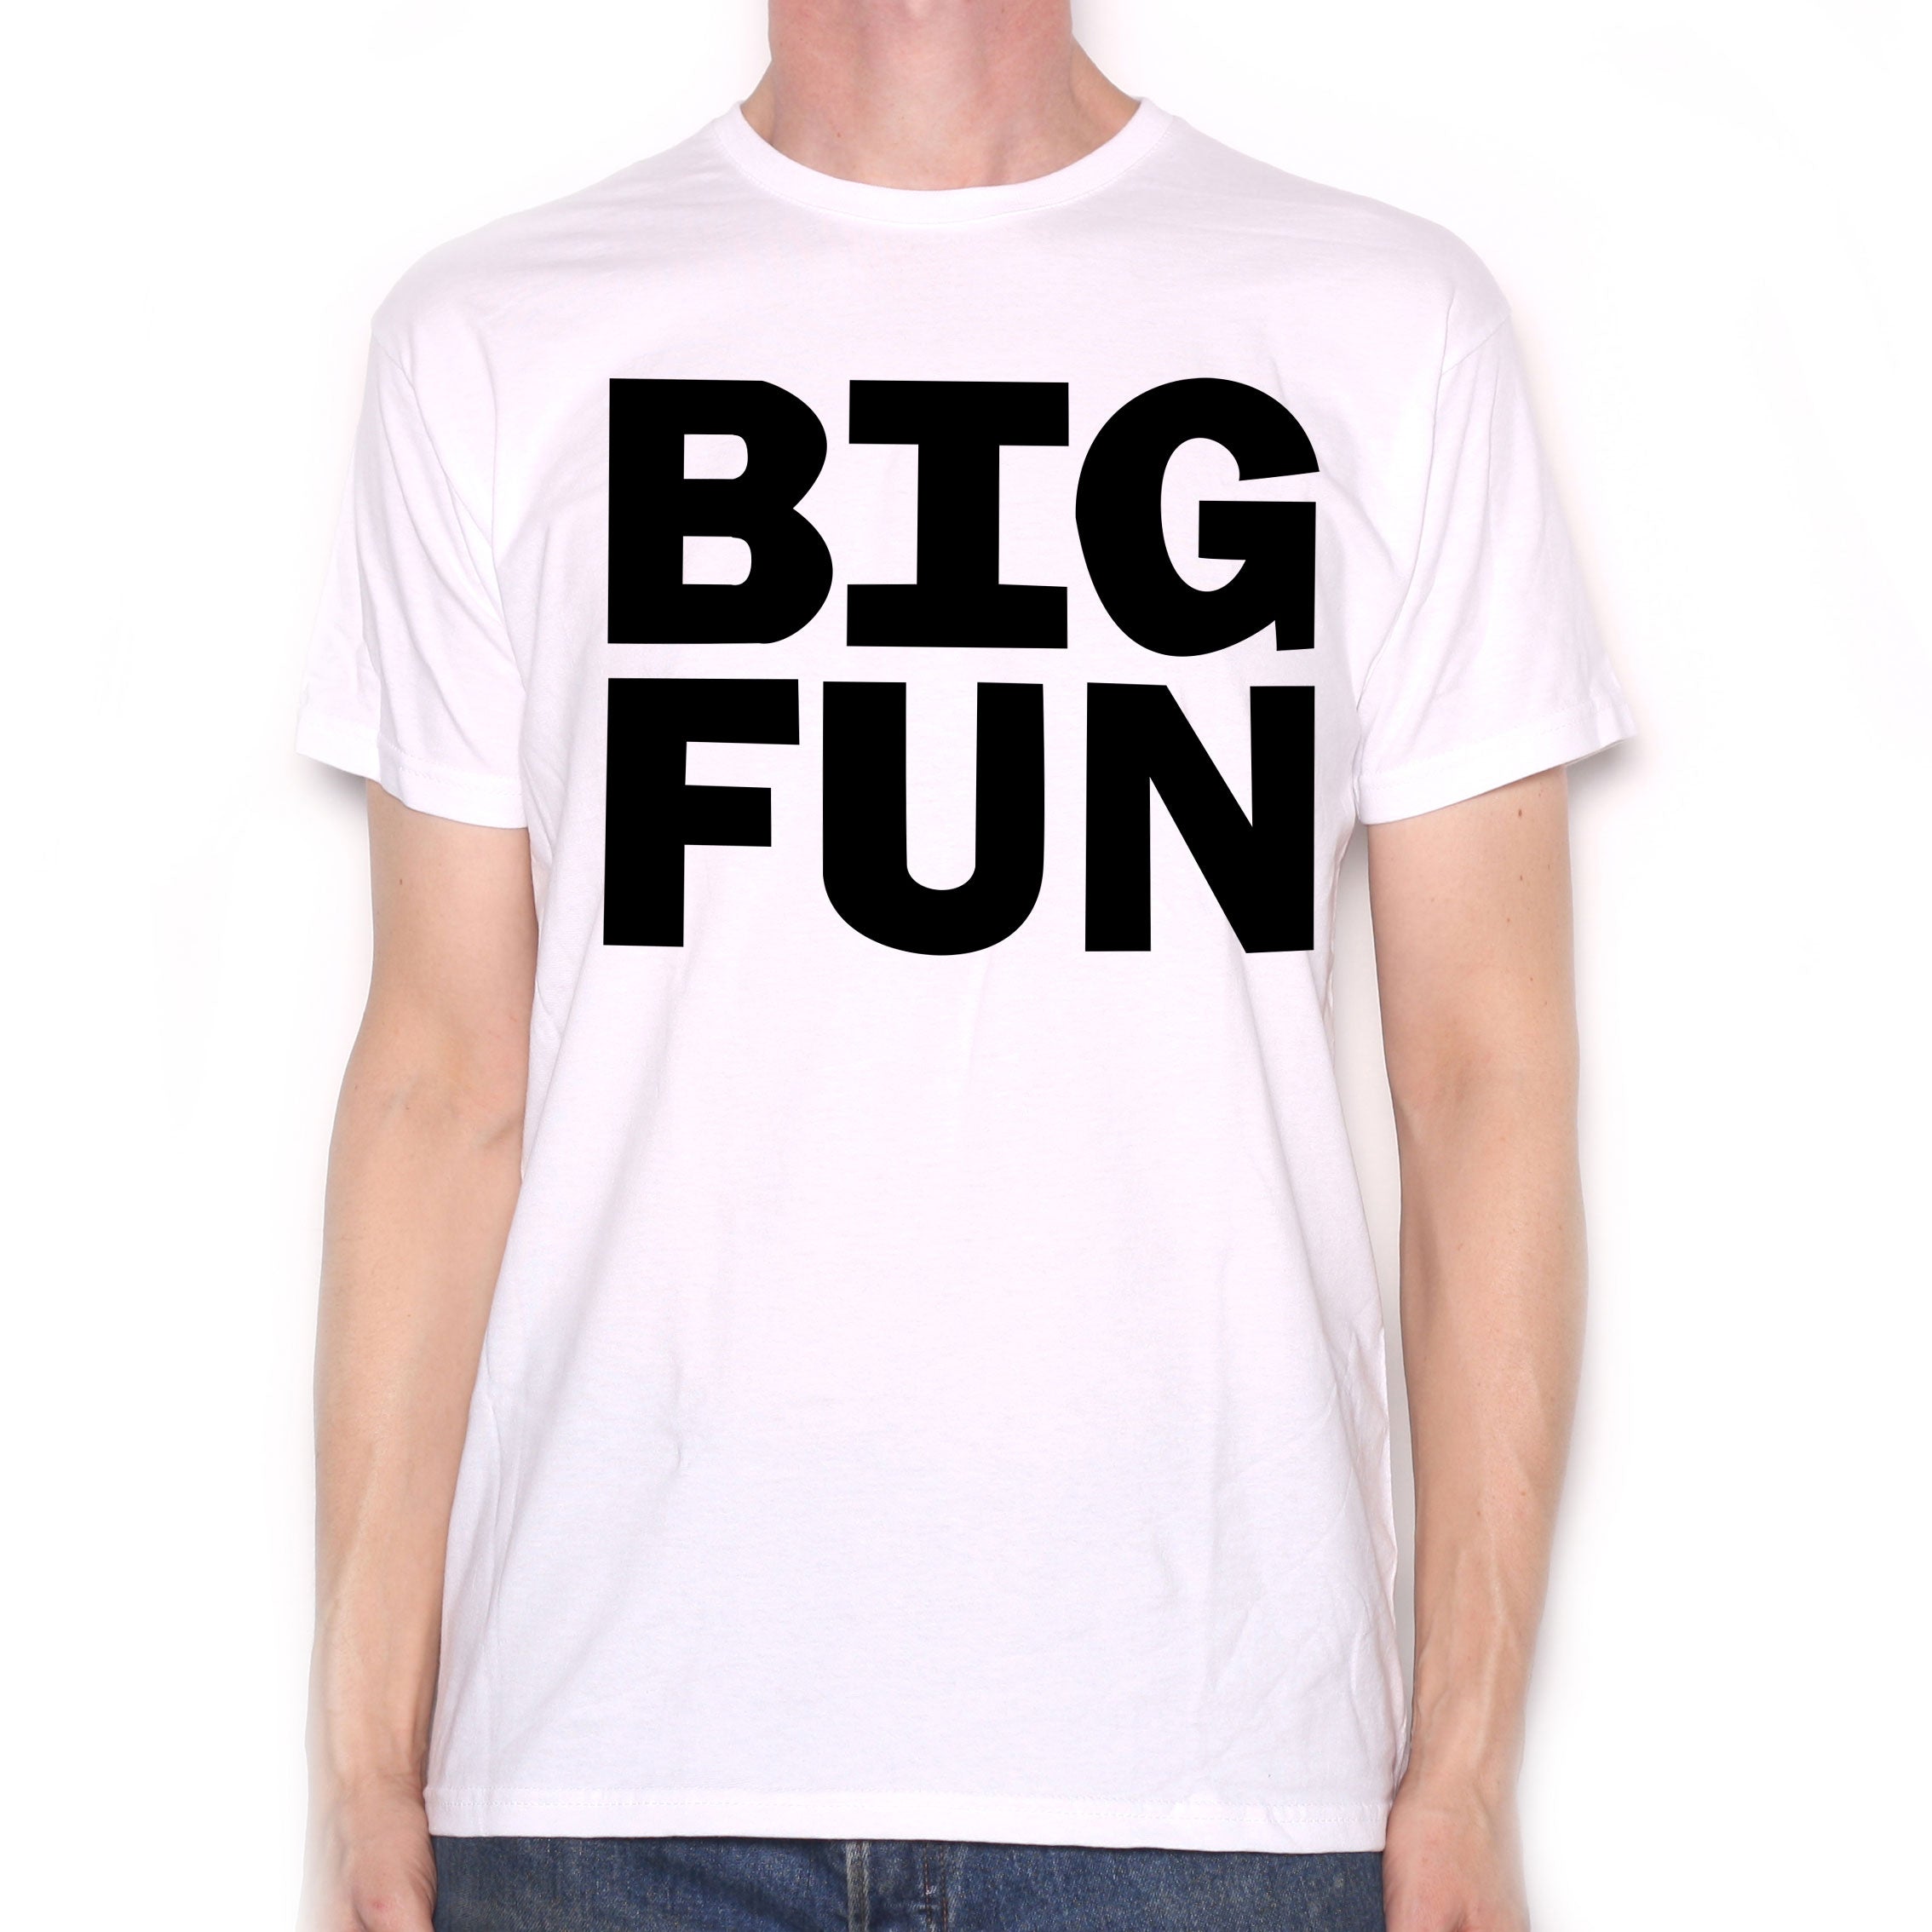 As Seen In Heathers T Shirt - Big Fun